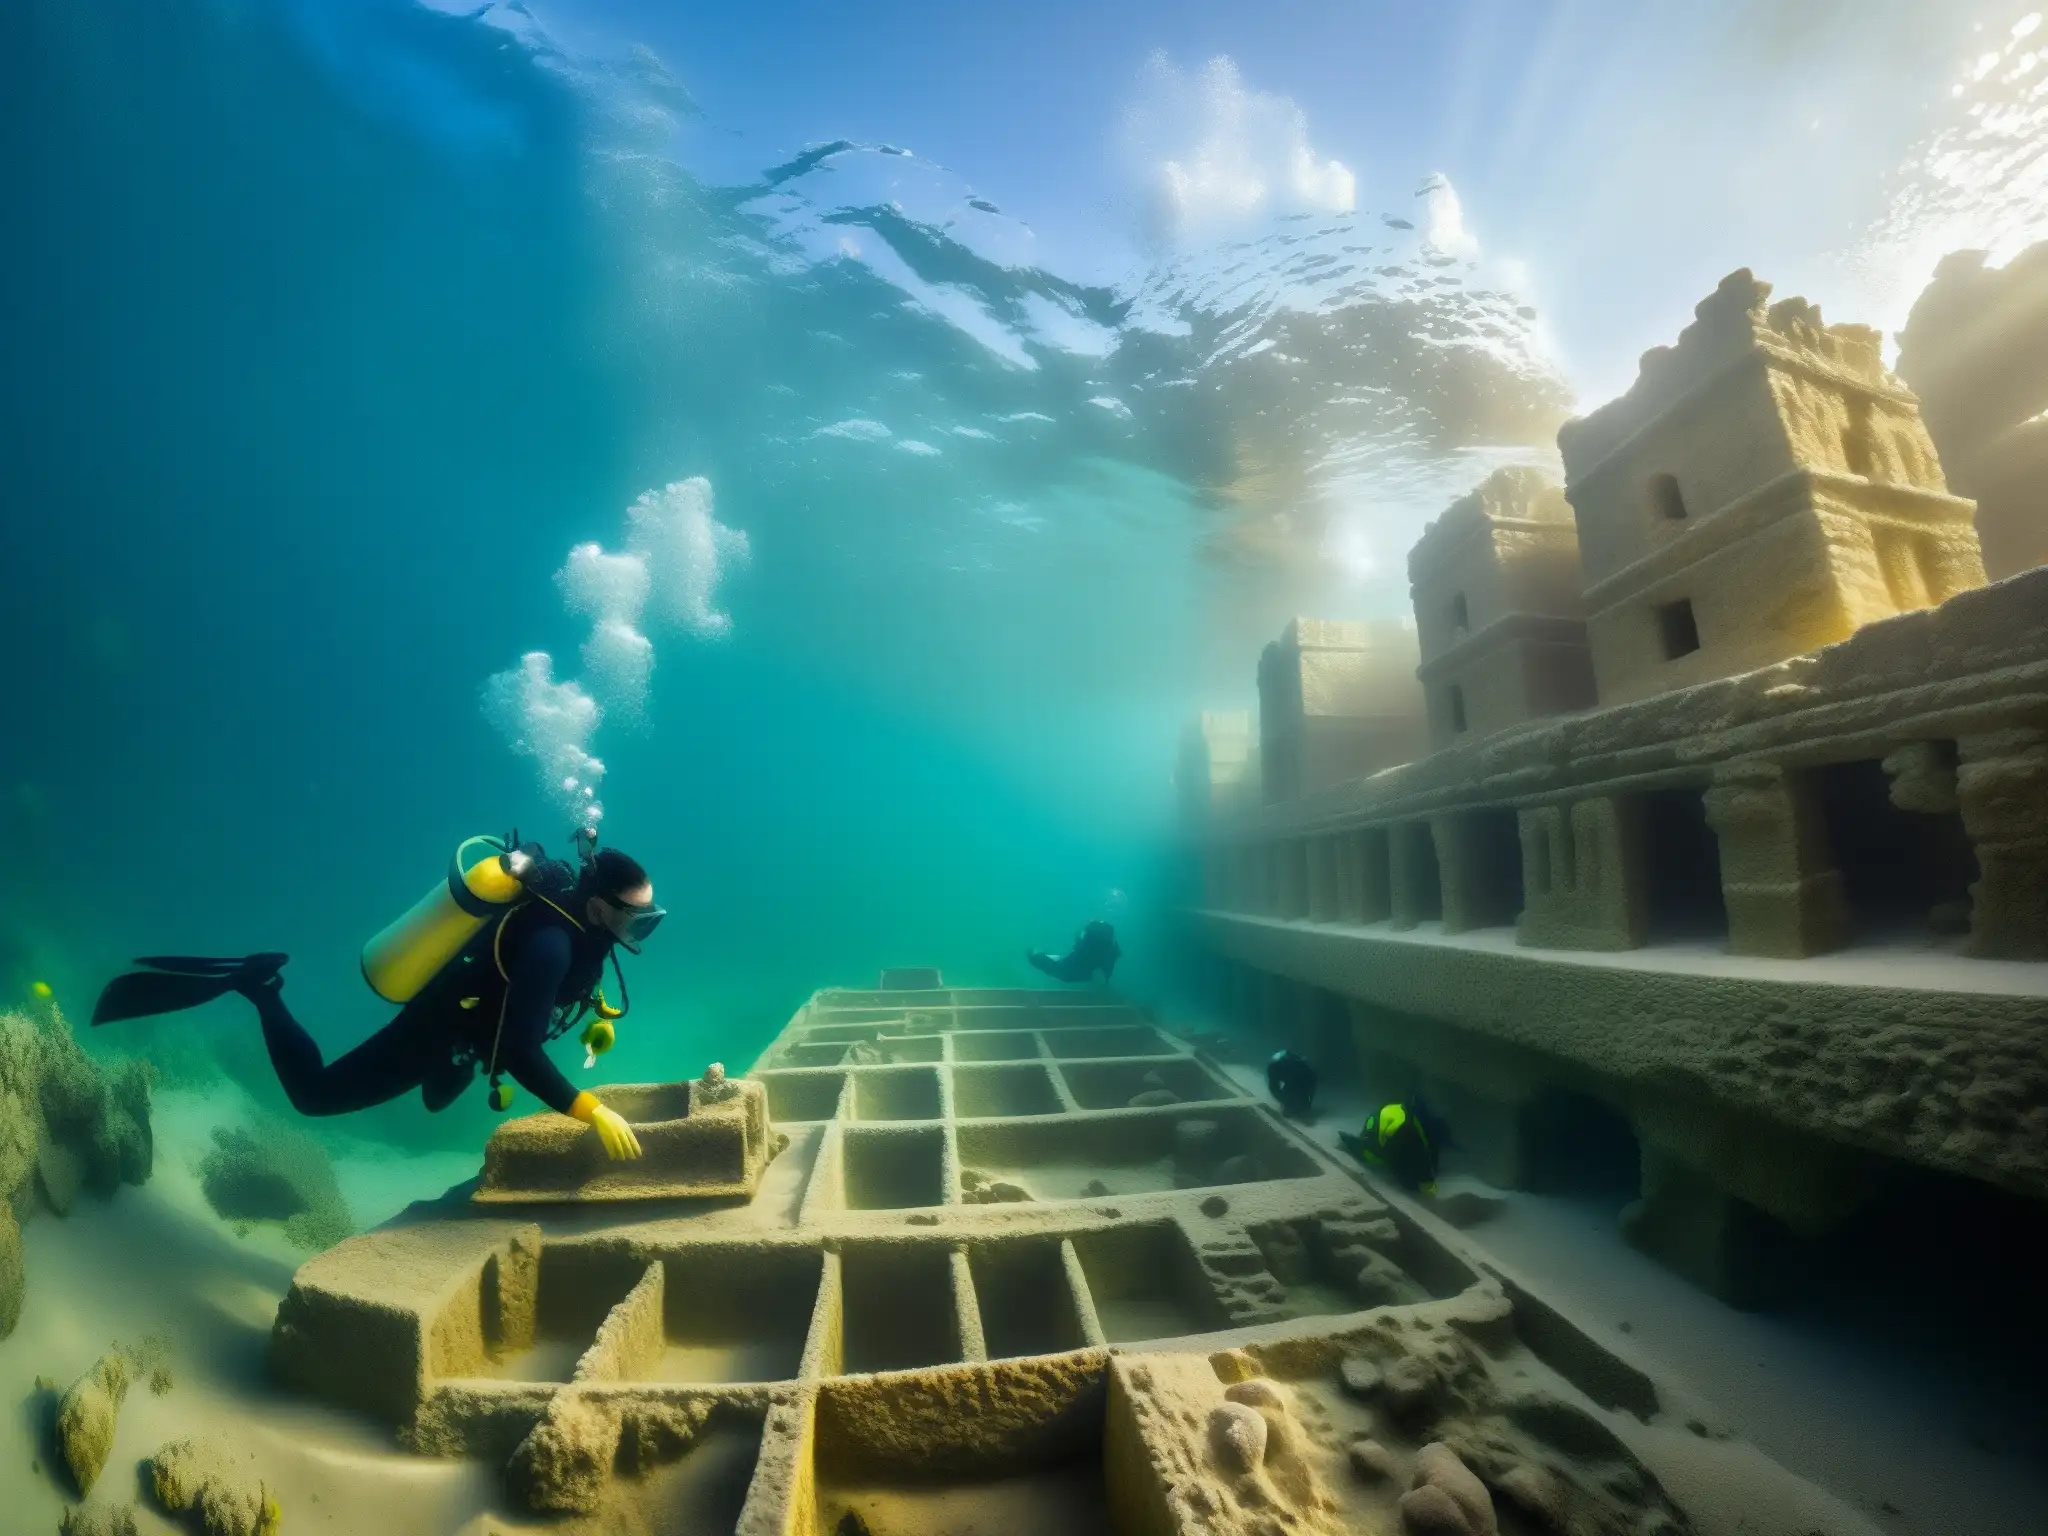 Descubrimiento arqueológico: equipo submarino explorando ruinas antiguas en Dwarka, bajo el agua cristalina y estructuras de piedra